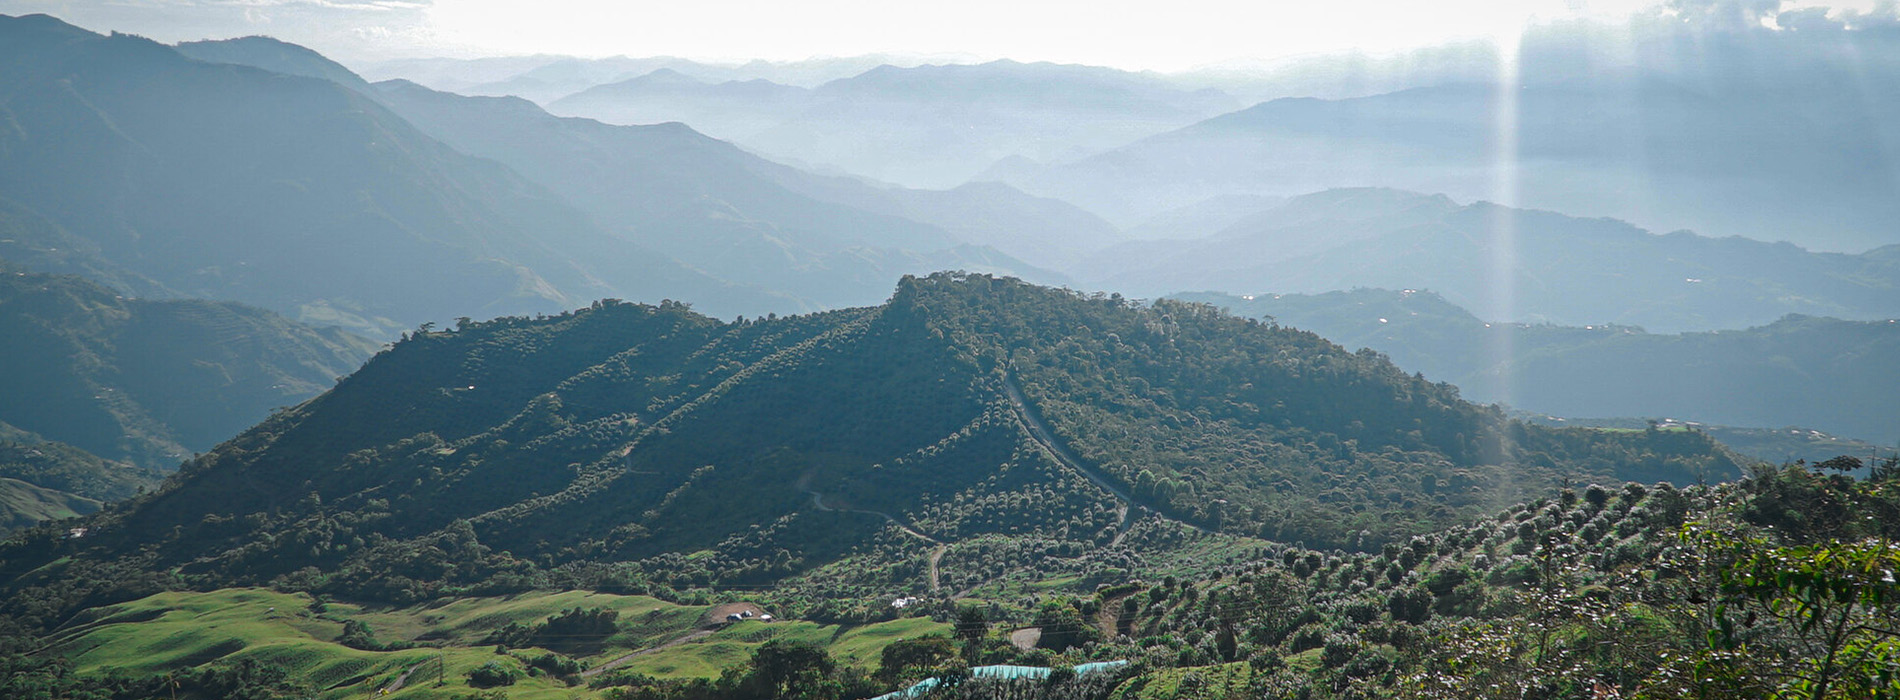 Paisaje con montañas en Colombia